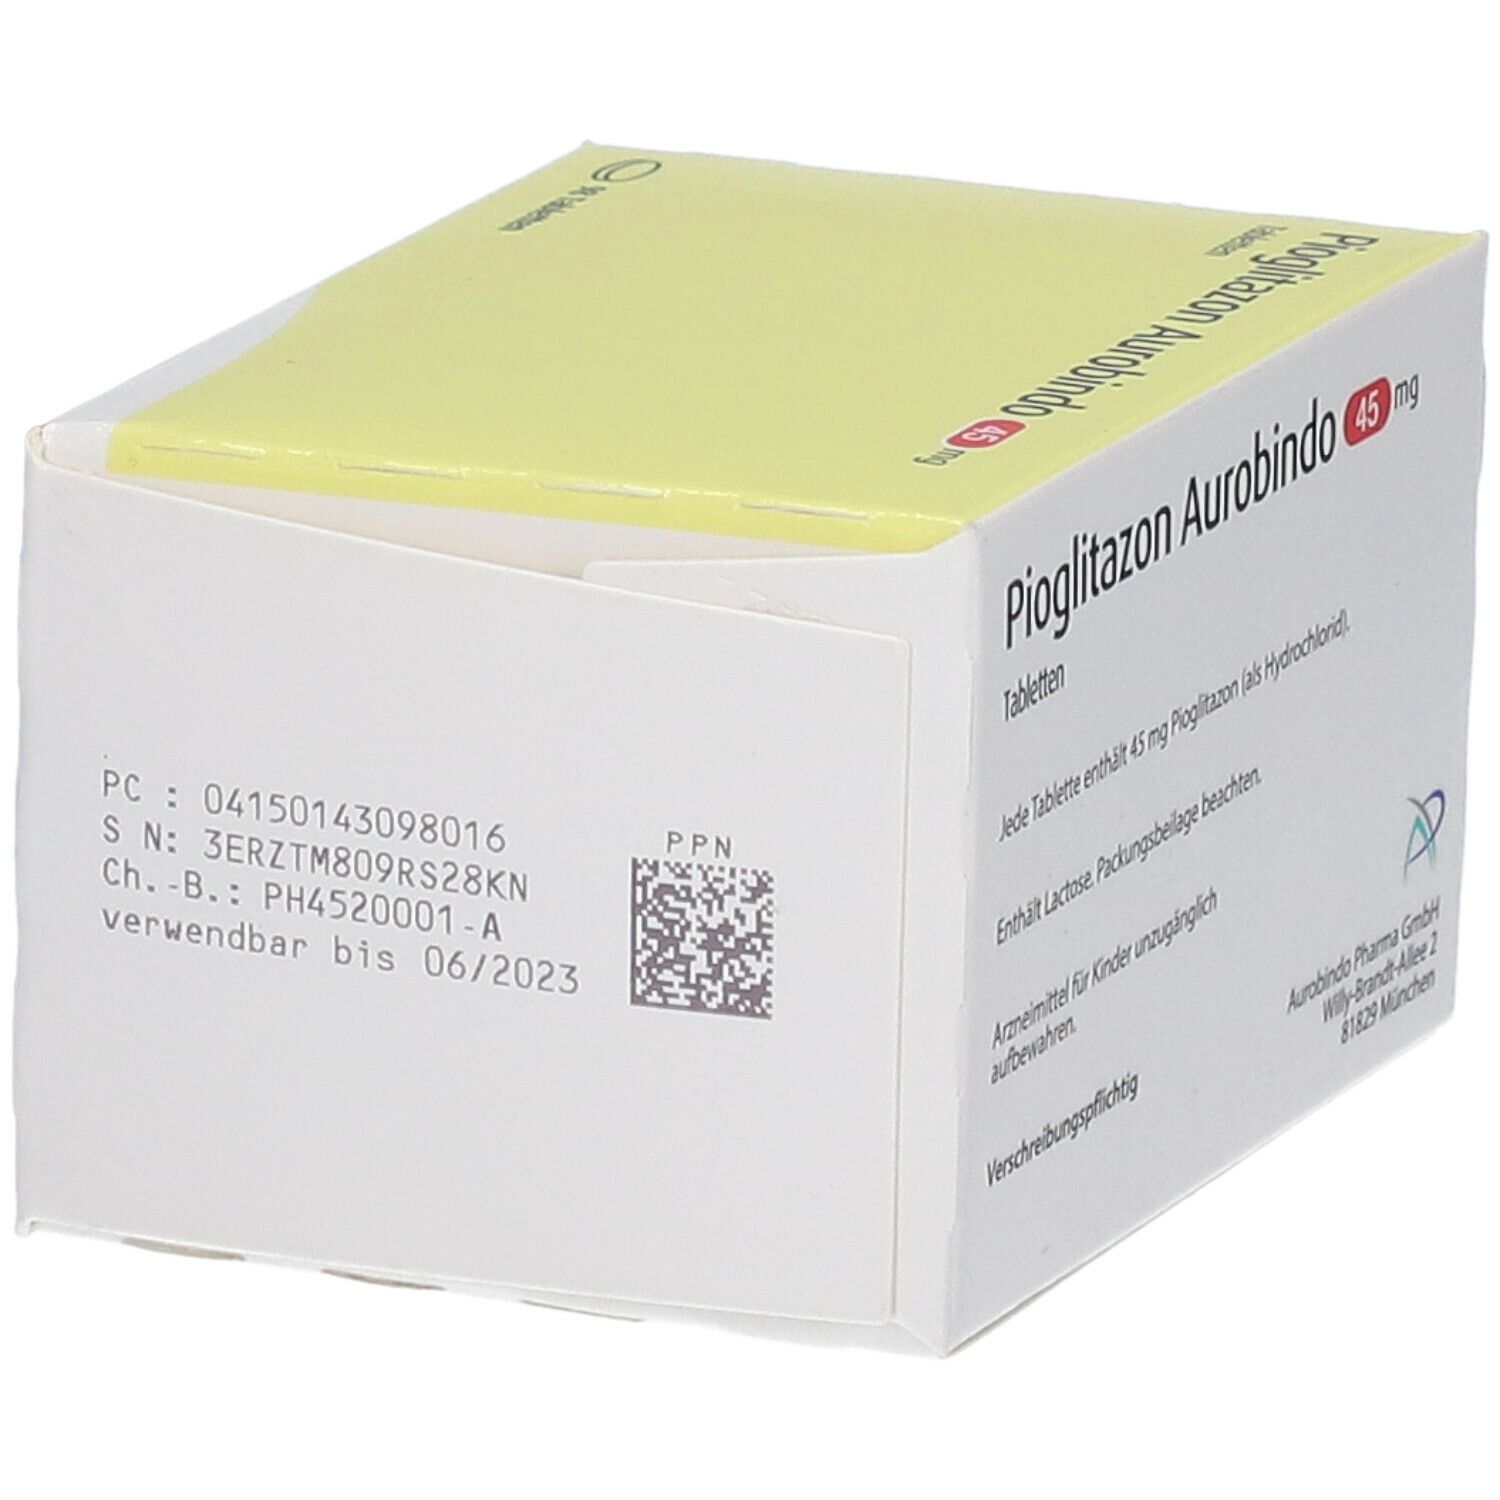 Pioglitazon Aurobindo 45 mg